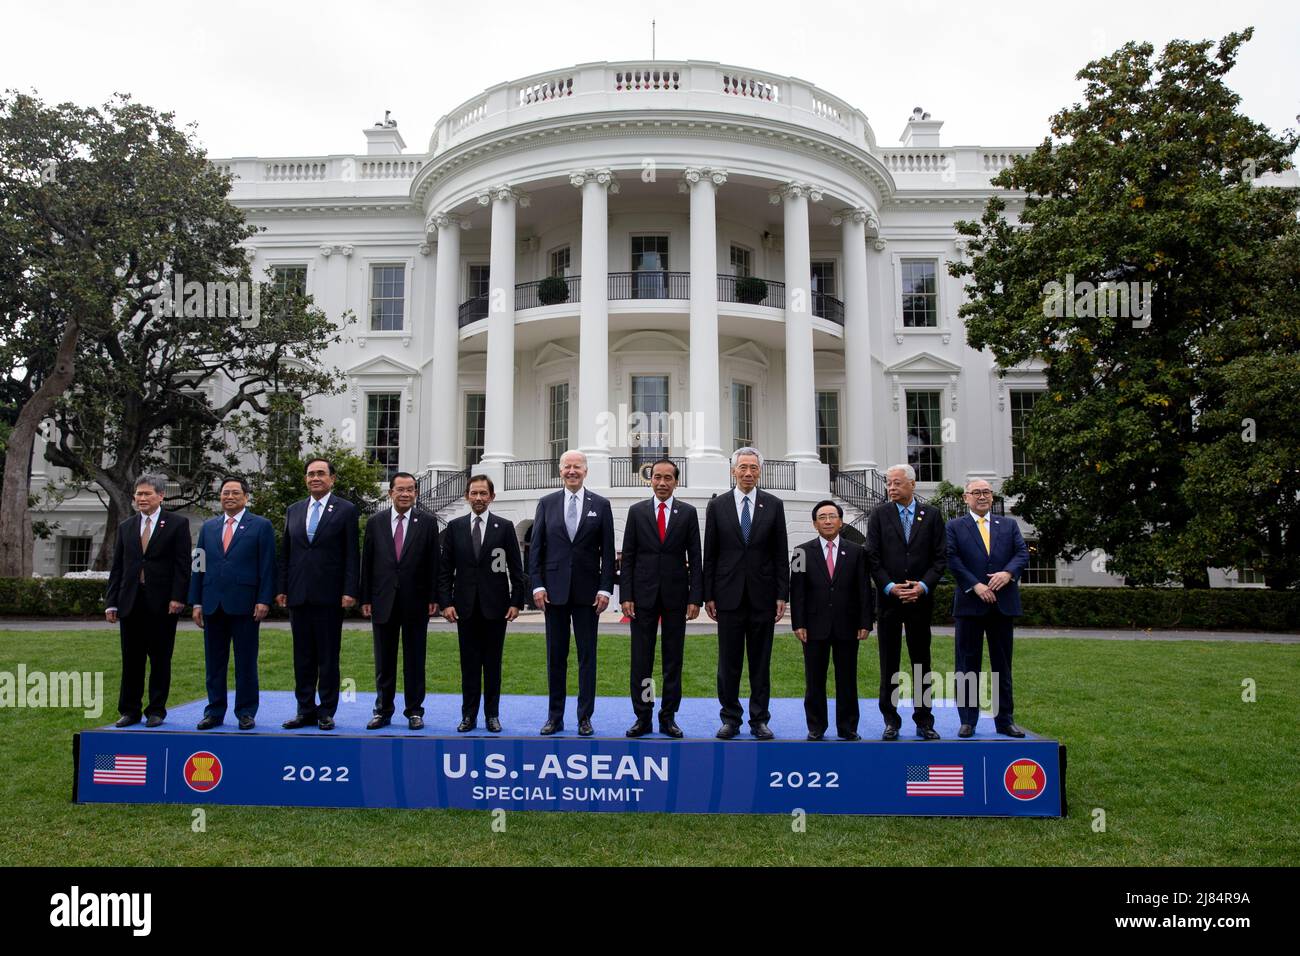 LE Président AMÉRICAIN Joe Biden (C) pose avec les dirigeants du Sommet spécial États-Unis-ASEAN lors d'une photo de famille sur la pelouse sud de la Maison Blanche à Washington, DC, Etats-Unis, 12 mars 2022. Biden a accueilli les dirigeants des pays de l'ANASE et le Secrétaire général de l'ANASE à la Maison Blanche, alors que le Sommet spécial États-Unis-ANASE se réunit, le deuxième Sommet spécial depuis 2016. Le sommet devrait aborder la réponse de la COVID-19 et la sécurité sanitaire mondiale, le changement climatique et le développement durable.Credit: Michael Reynolds/Pool via CNP/MediaPunch Banque D'Images